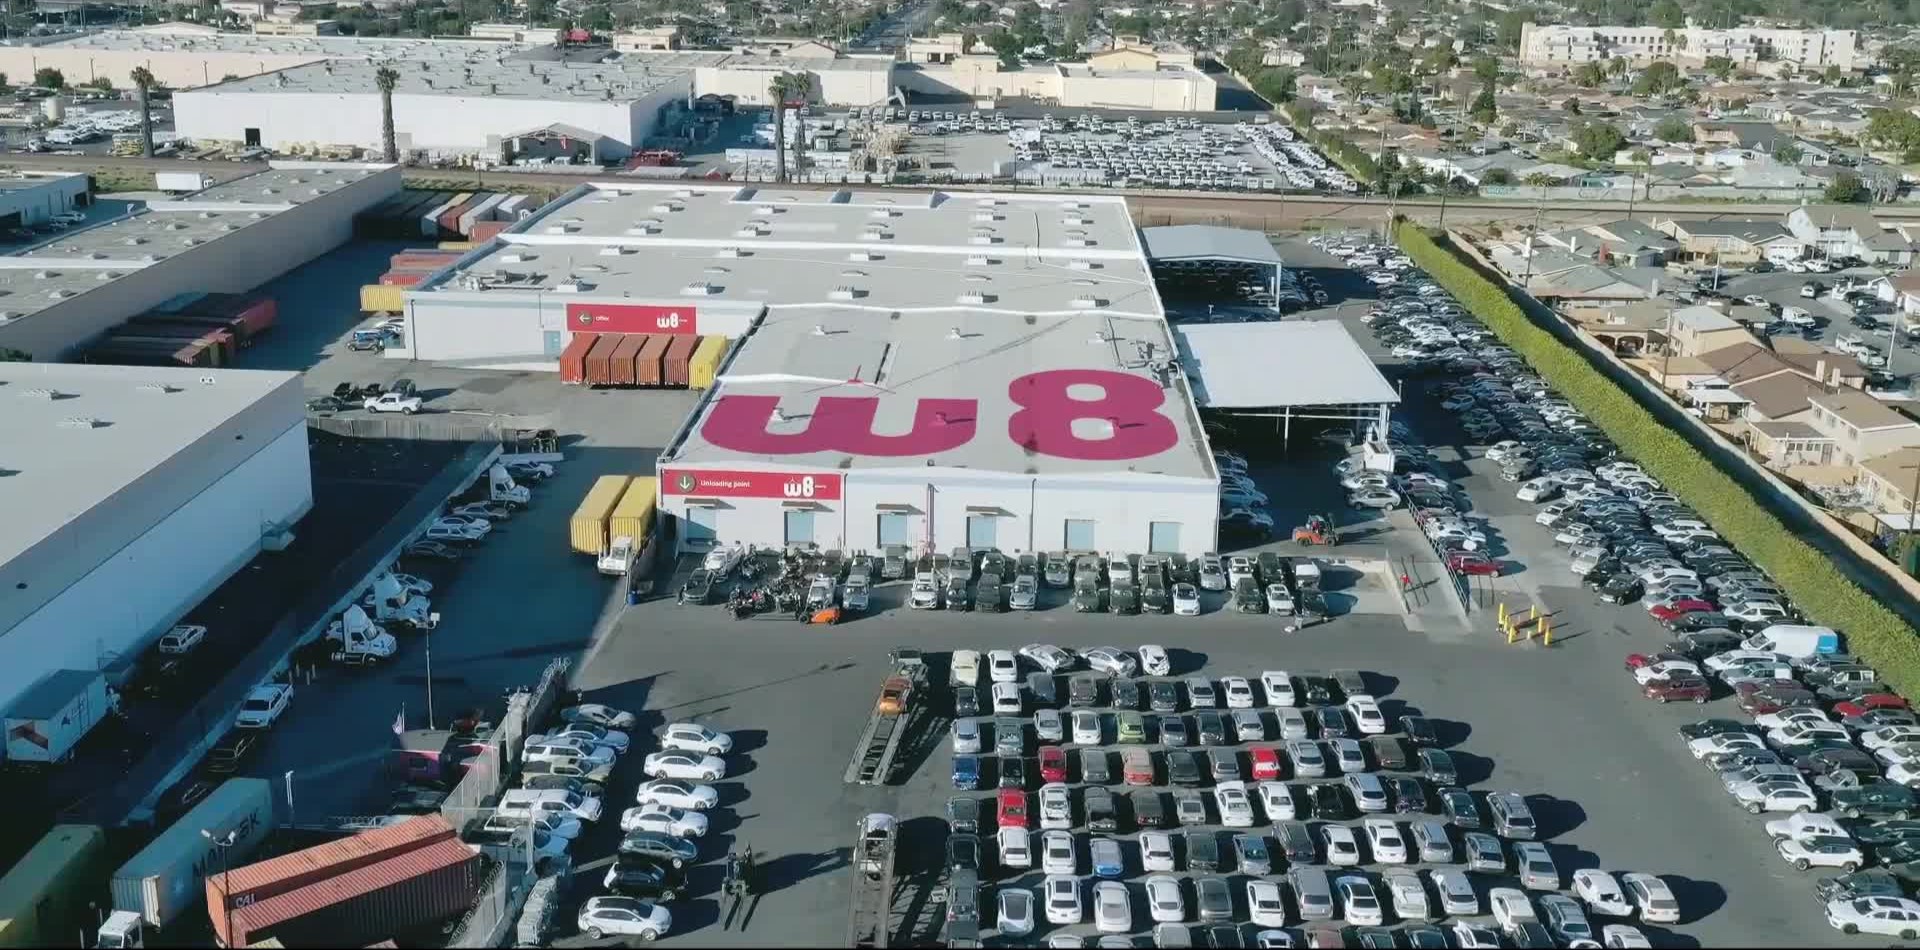 Na środku zdjęcia znajduje się magazyn z dużym logo W8 na dachu oraz mniejszymi logo nad kilkoma wejściami. Wokół magazynu jest parking, na którym jest zaparkowanych wiele samochodów.